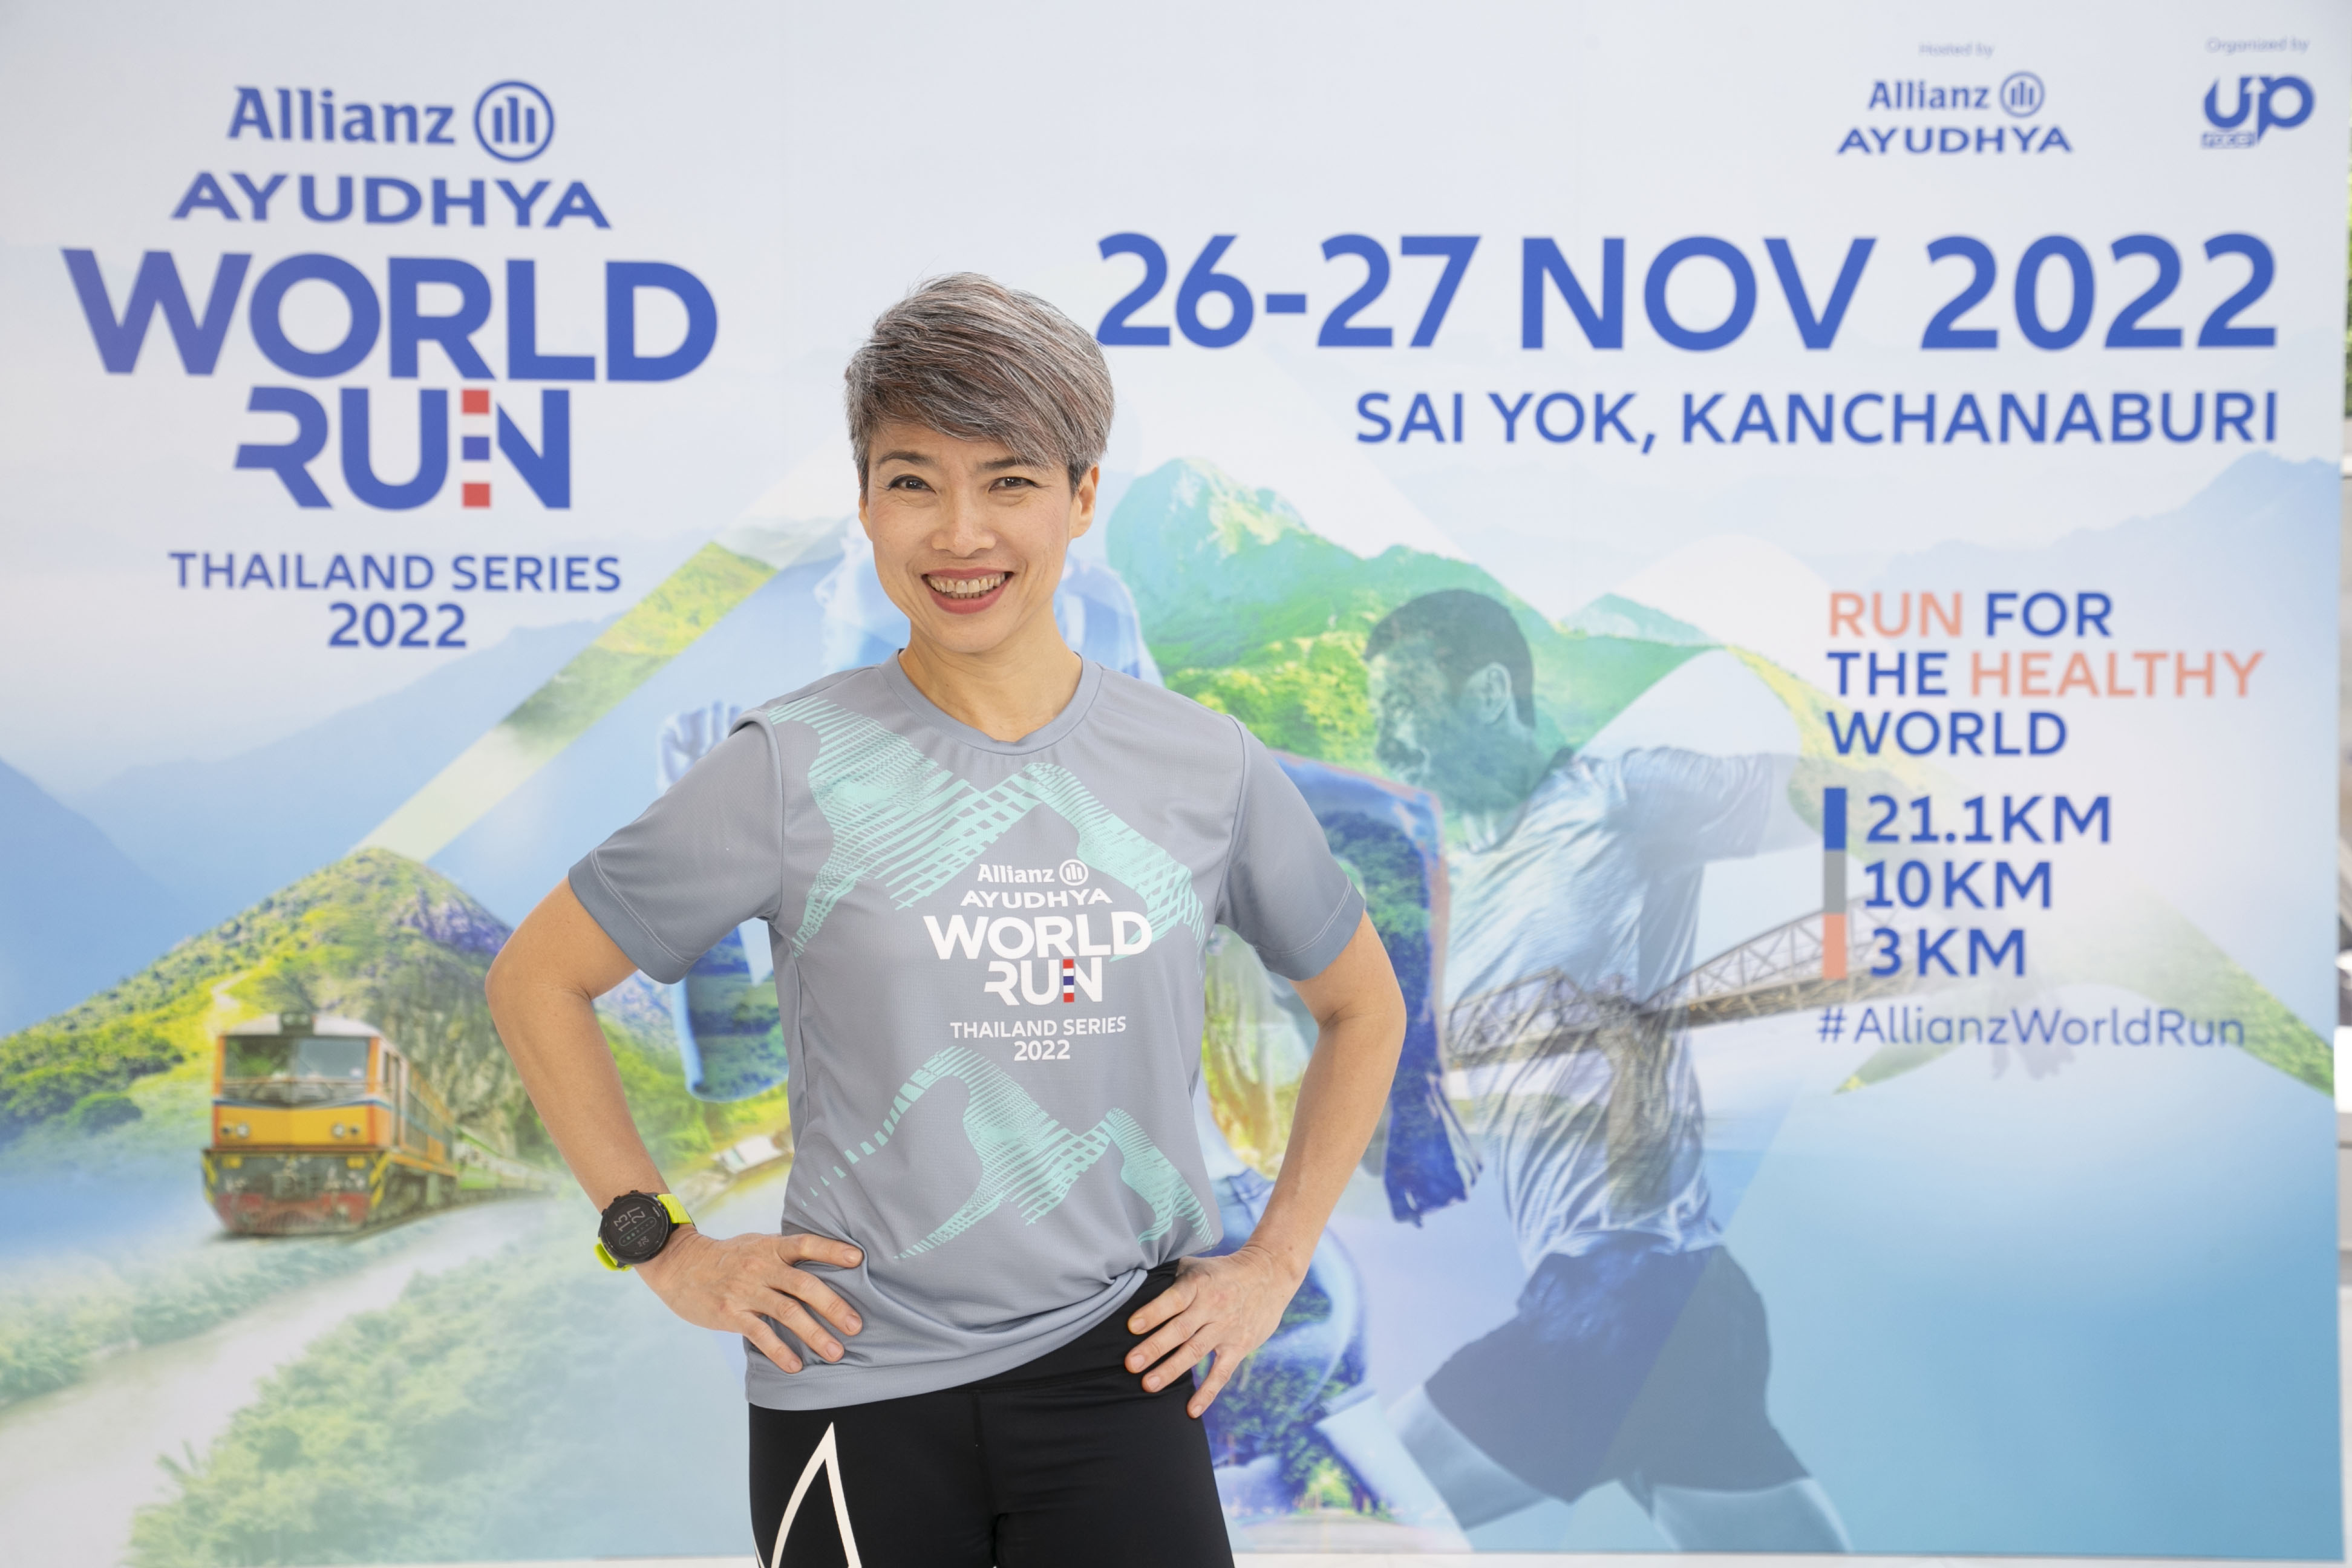 กลับมาอีกครั้ง ! อลิอันซ์ อยุธยา เตรียมจัดงานวิ่งประจำปี “Allianz Ayudhya World Run Thailand Series 2022”  ภายใต้แนวคิด “Run for the Healthy World”  วิ่งเพื่อโลก วิ่งเพื่อสุขภาพดี ปลายปีนี้ ณ อำเภอไทรโยค จังหวัดกาญจนบุรี